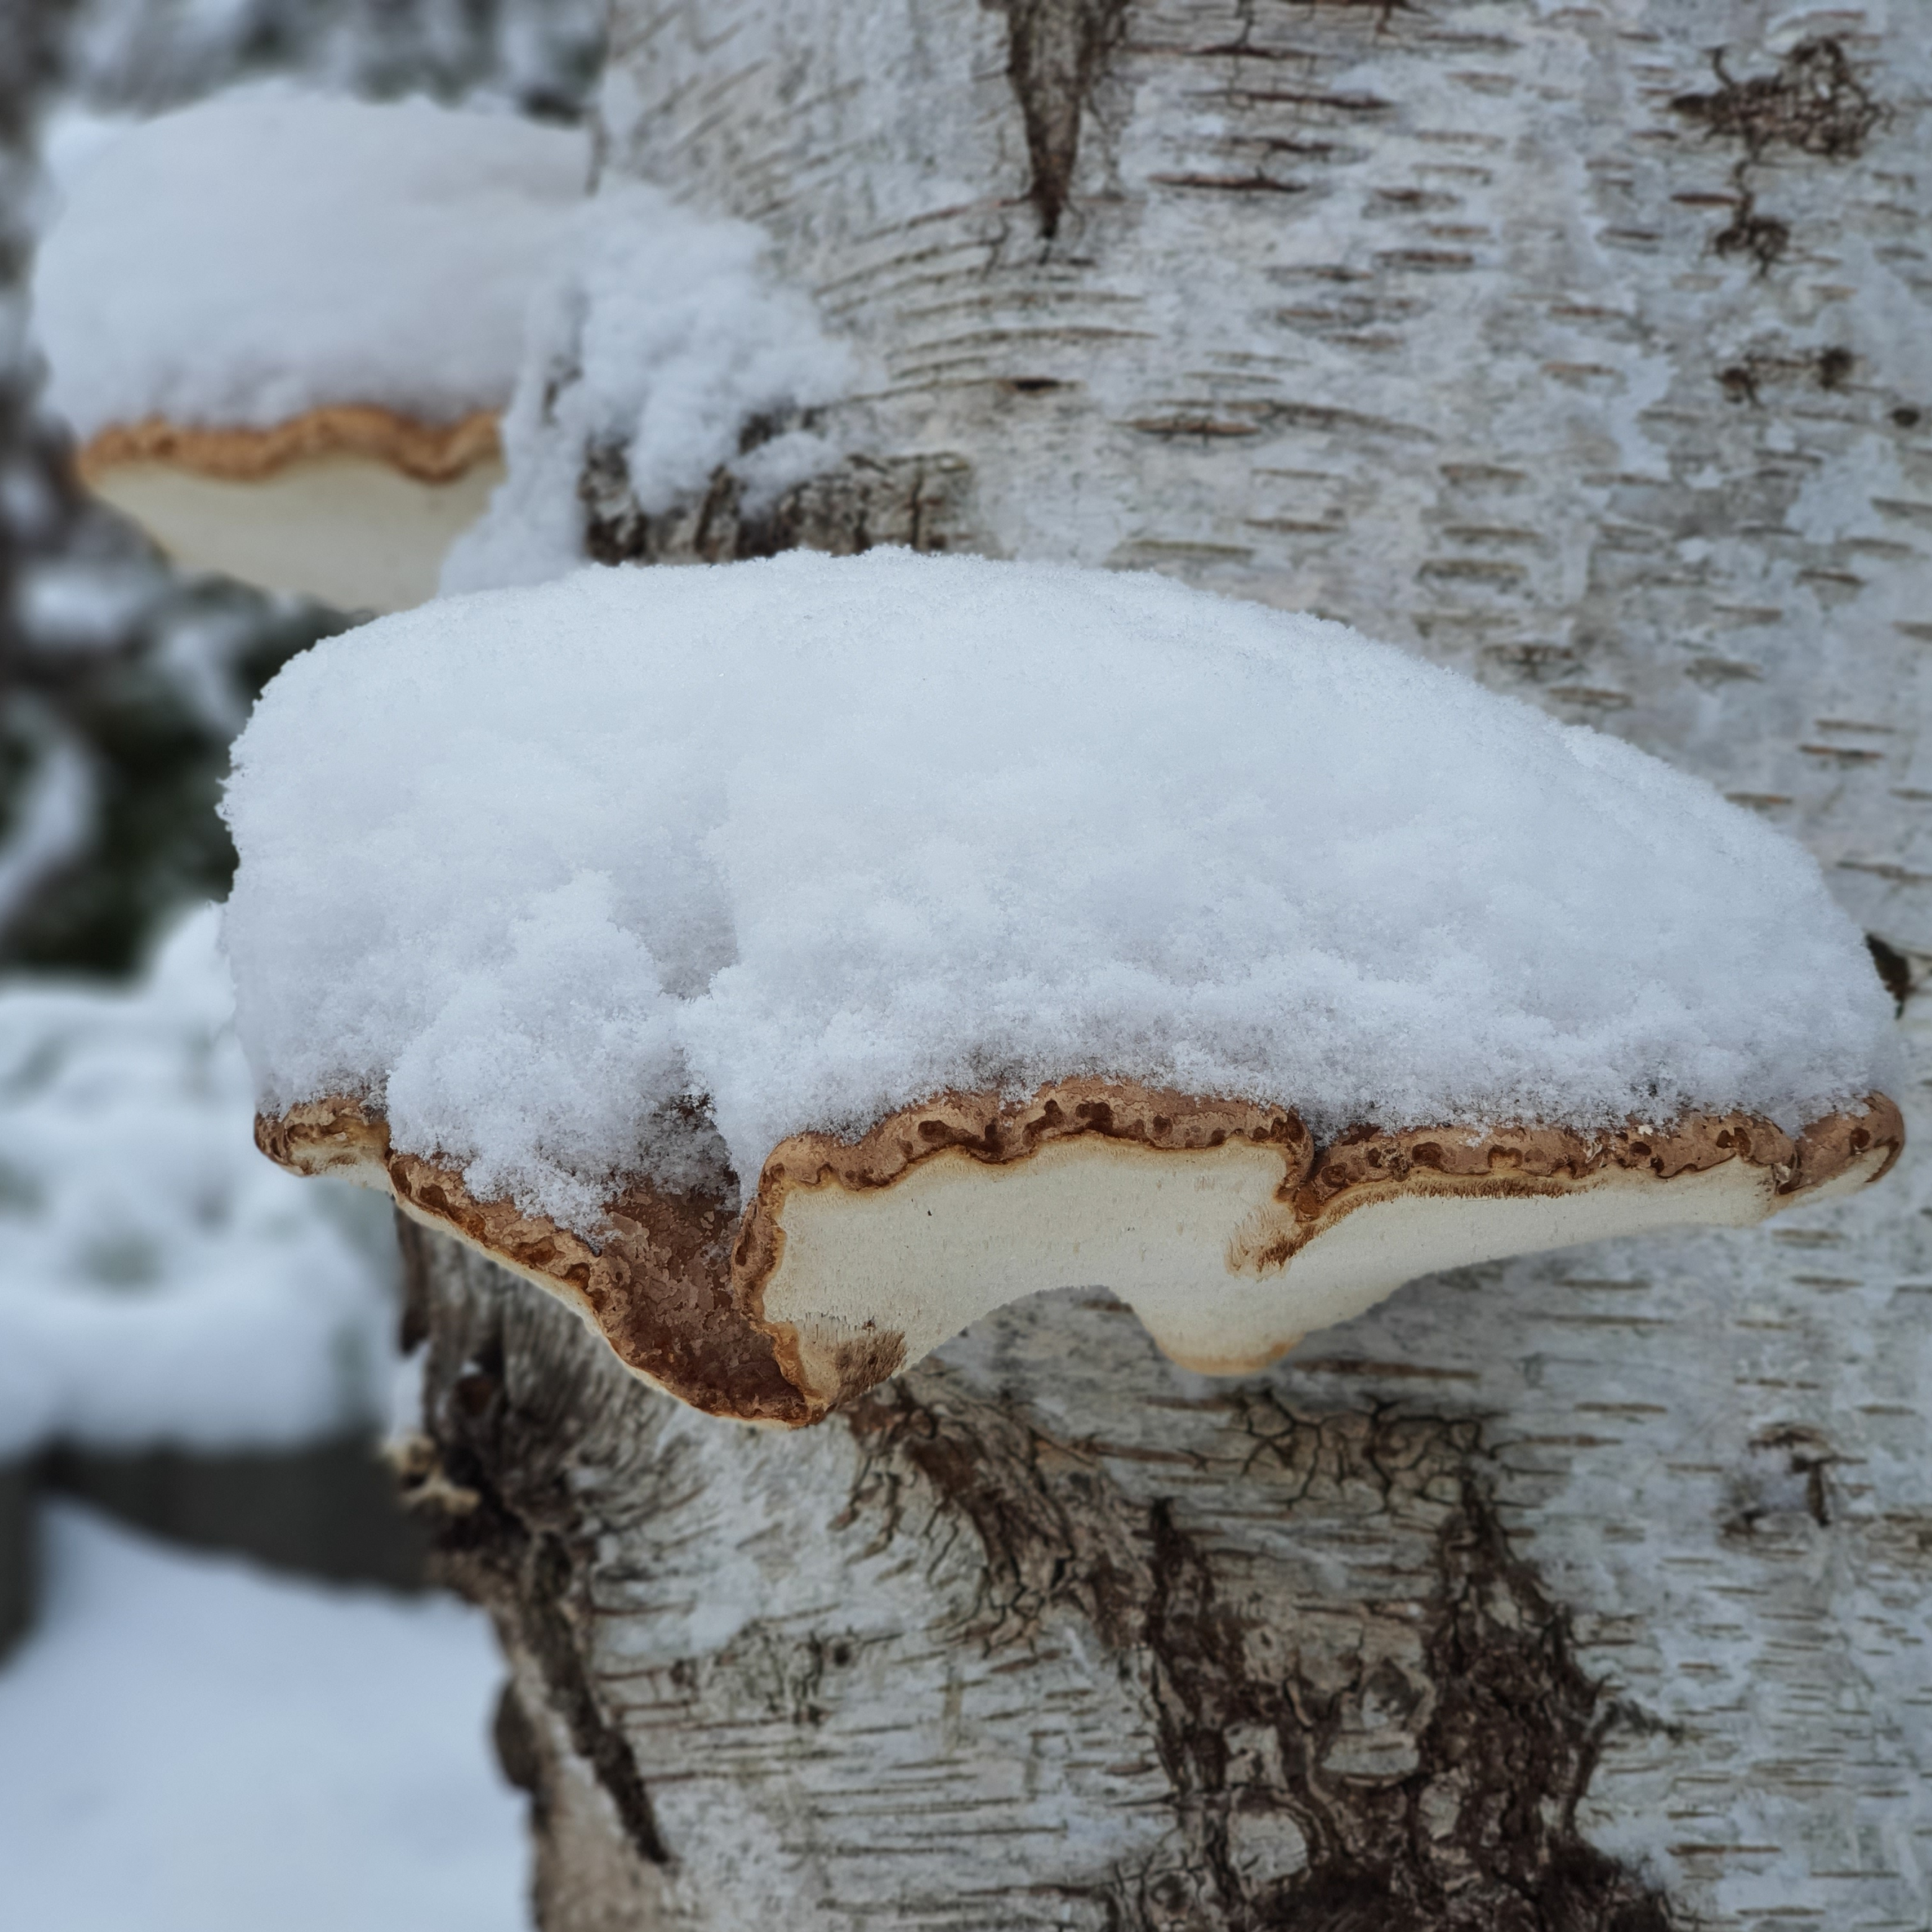 عيش الغراب المغطى بالثلوج على جذع الشجرة (صور شتاء يناير 2021)